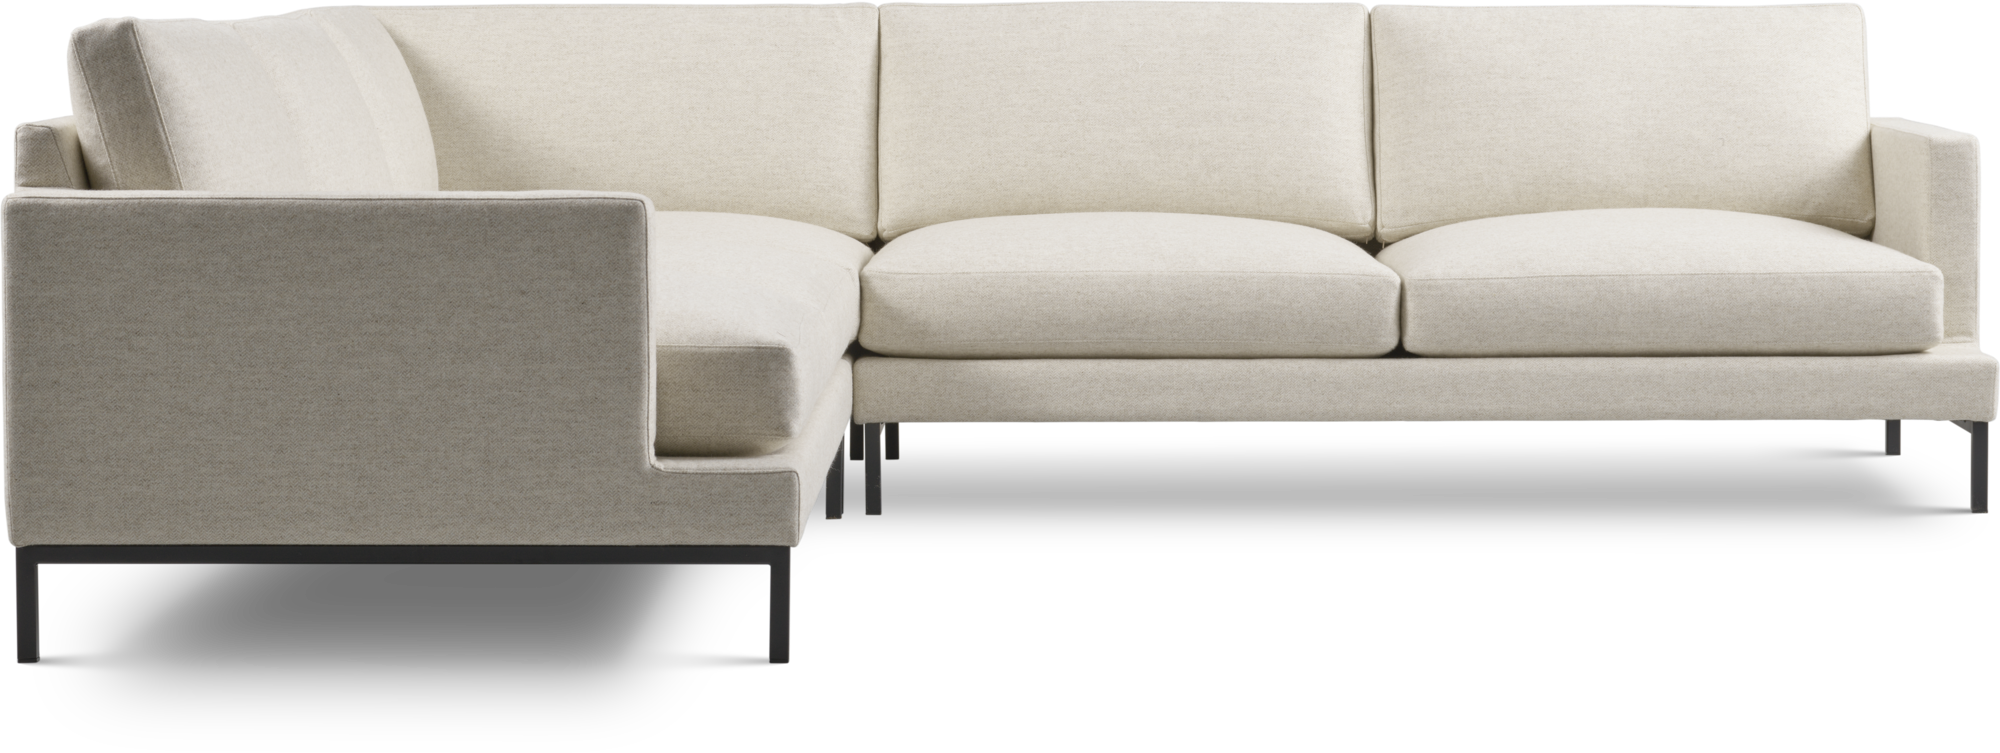 Elliot modular sofa